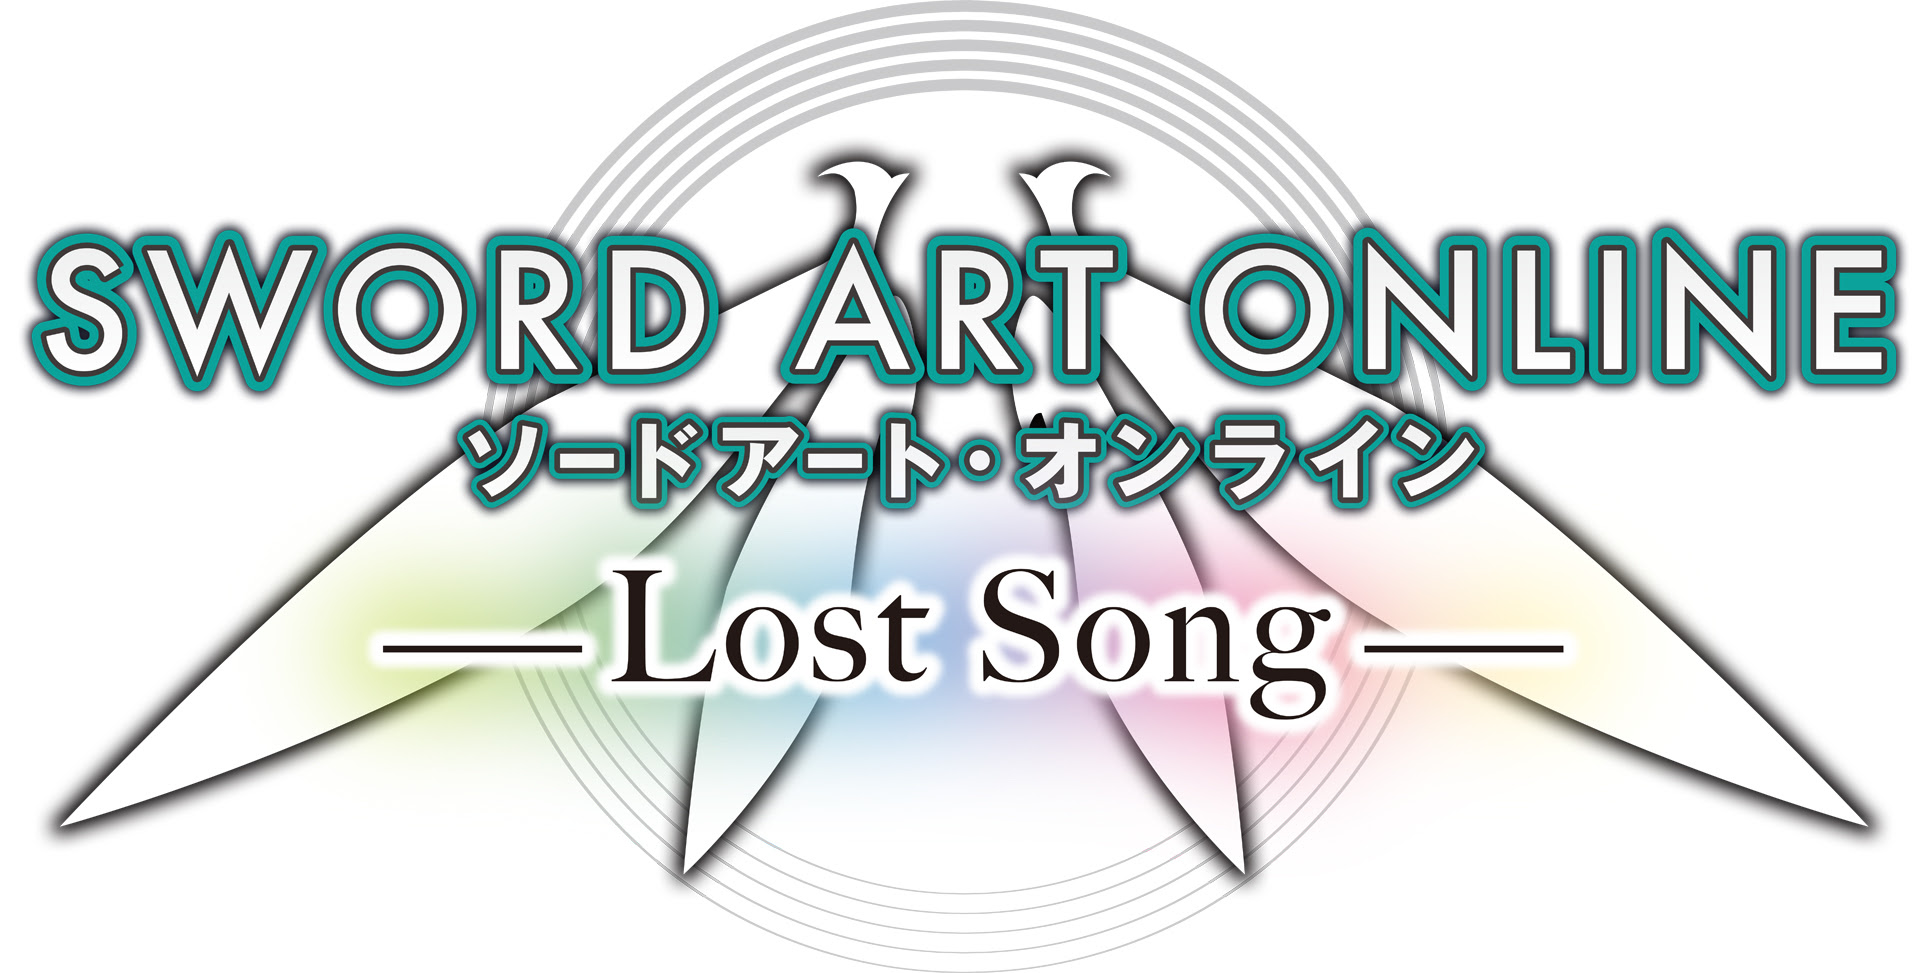 Sword Art Online: Lost Song Release Date Confirmed